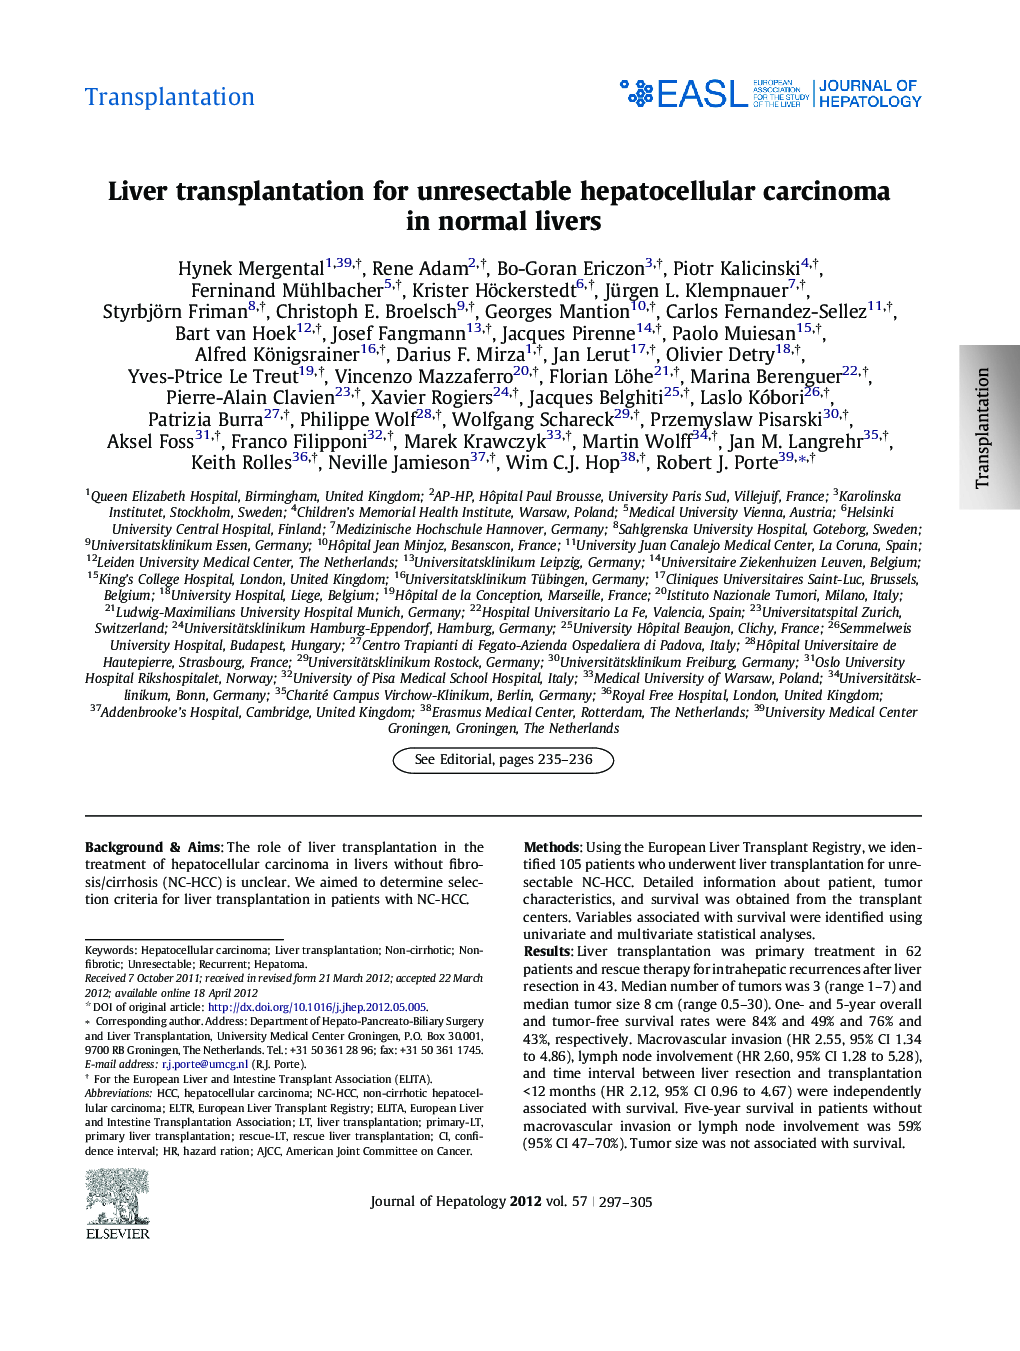 TransplantationLiver transplantation for unresectable hepatocellular carcinoma in normal livers